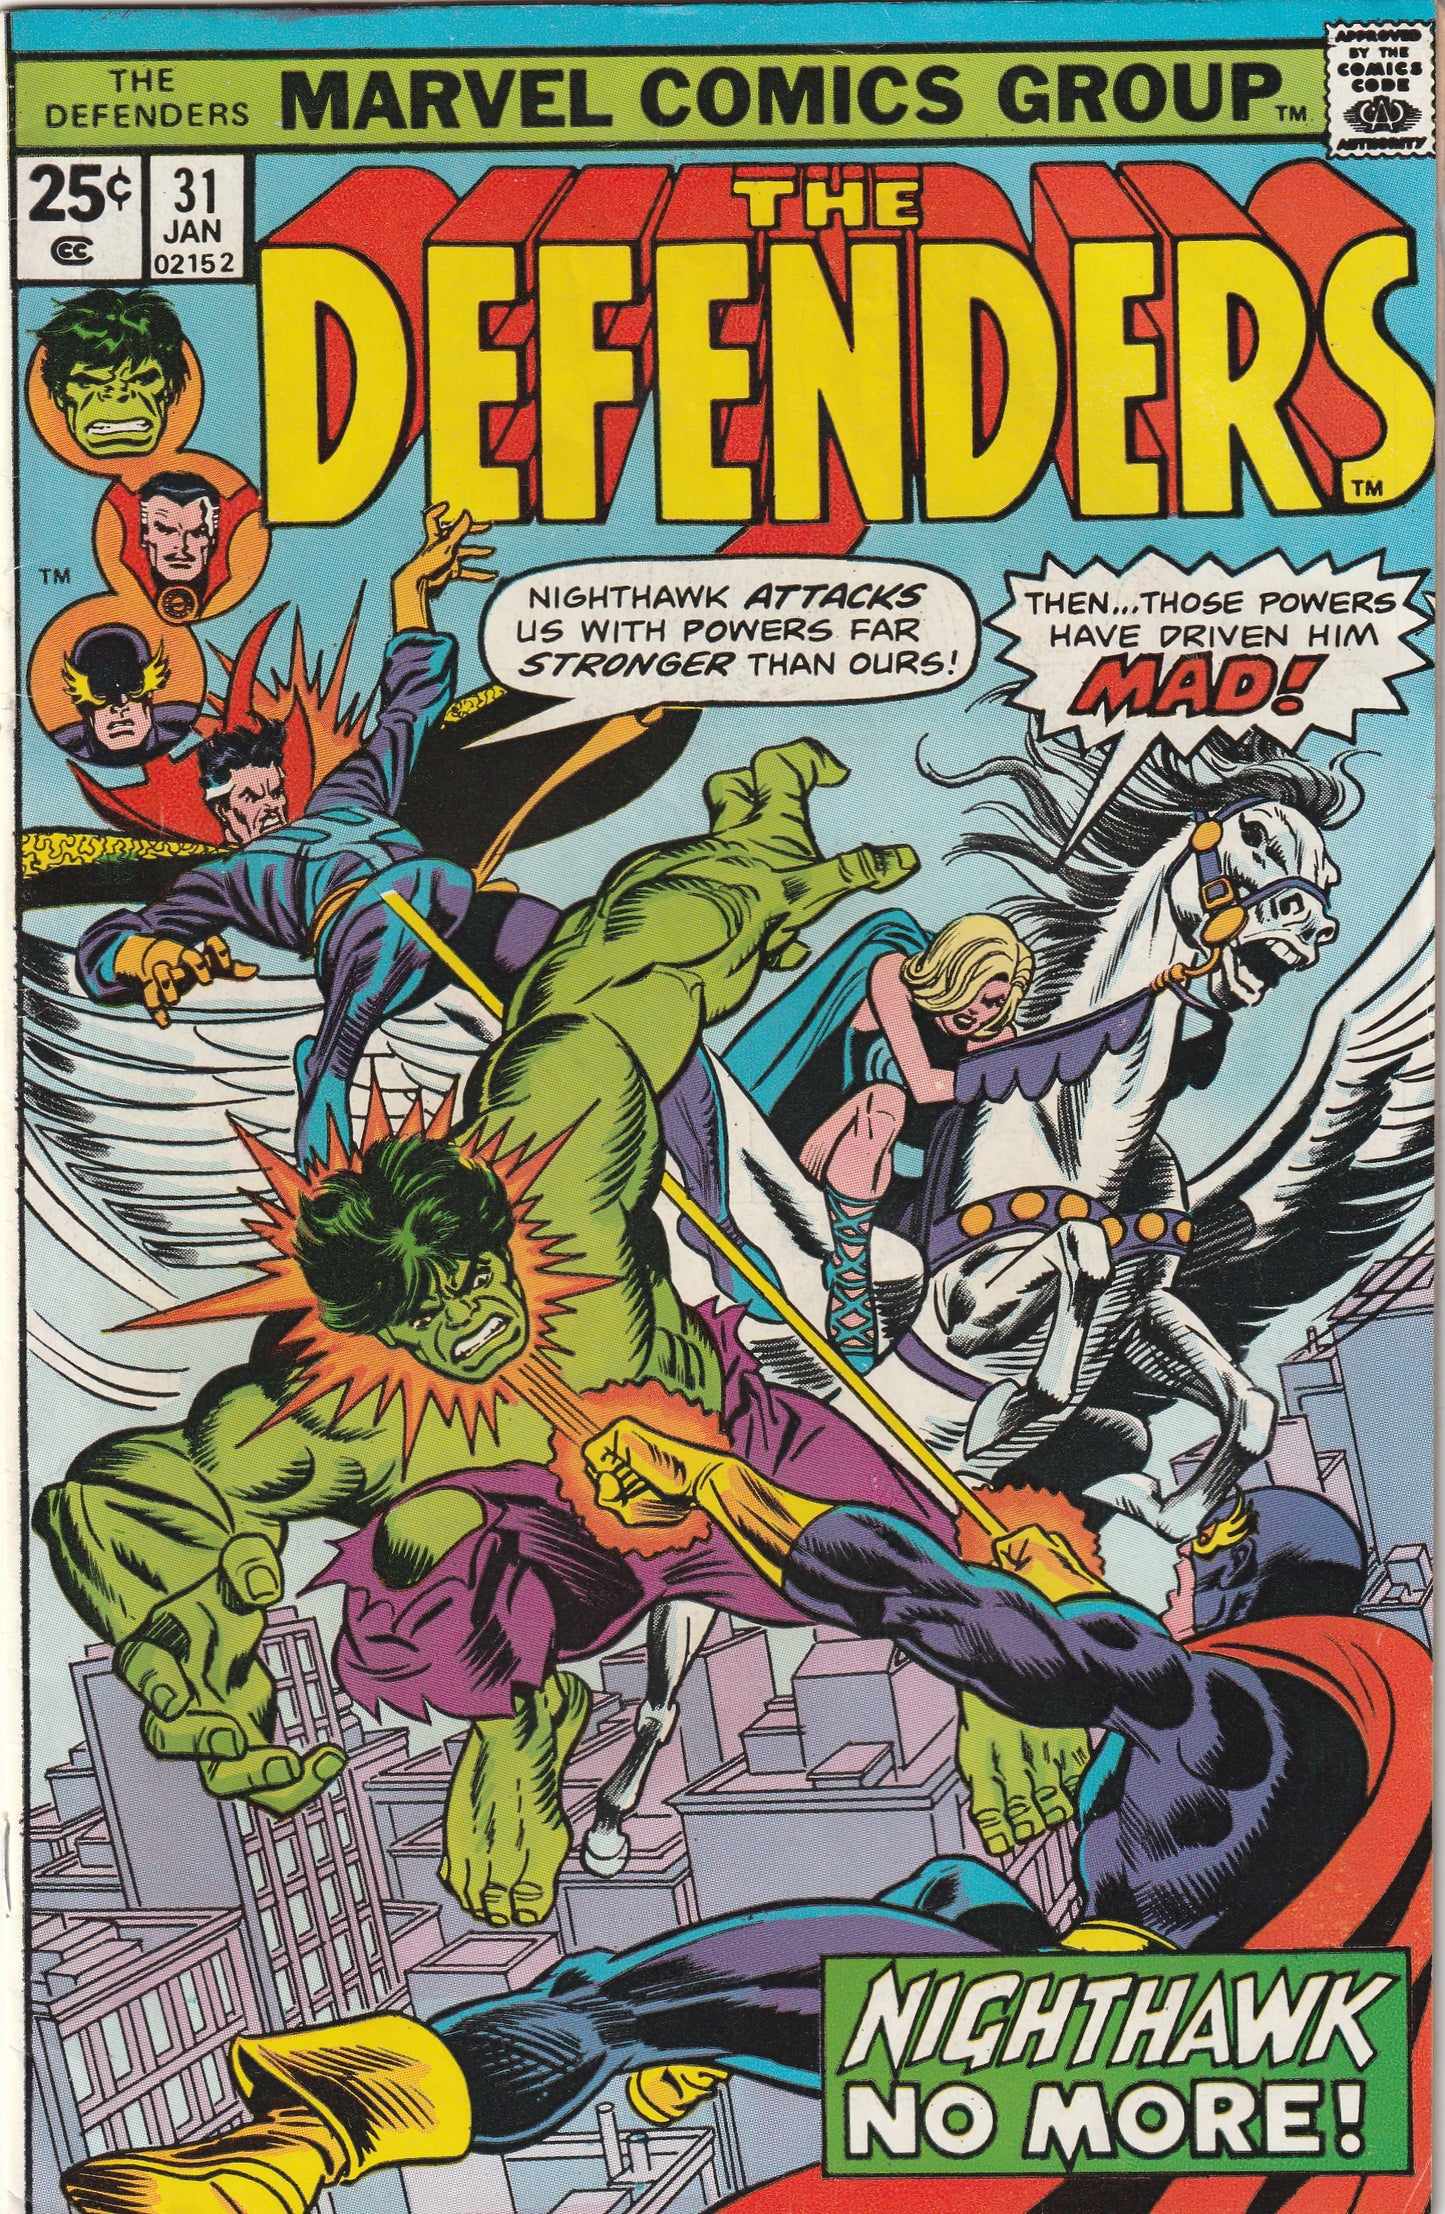 Defenders #31 (1976) - Headman appearance, Chondu Possesses Nighthawk